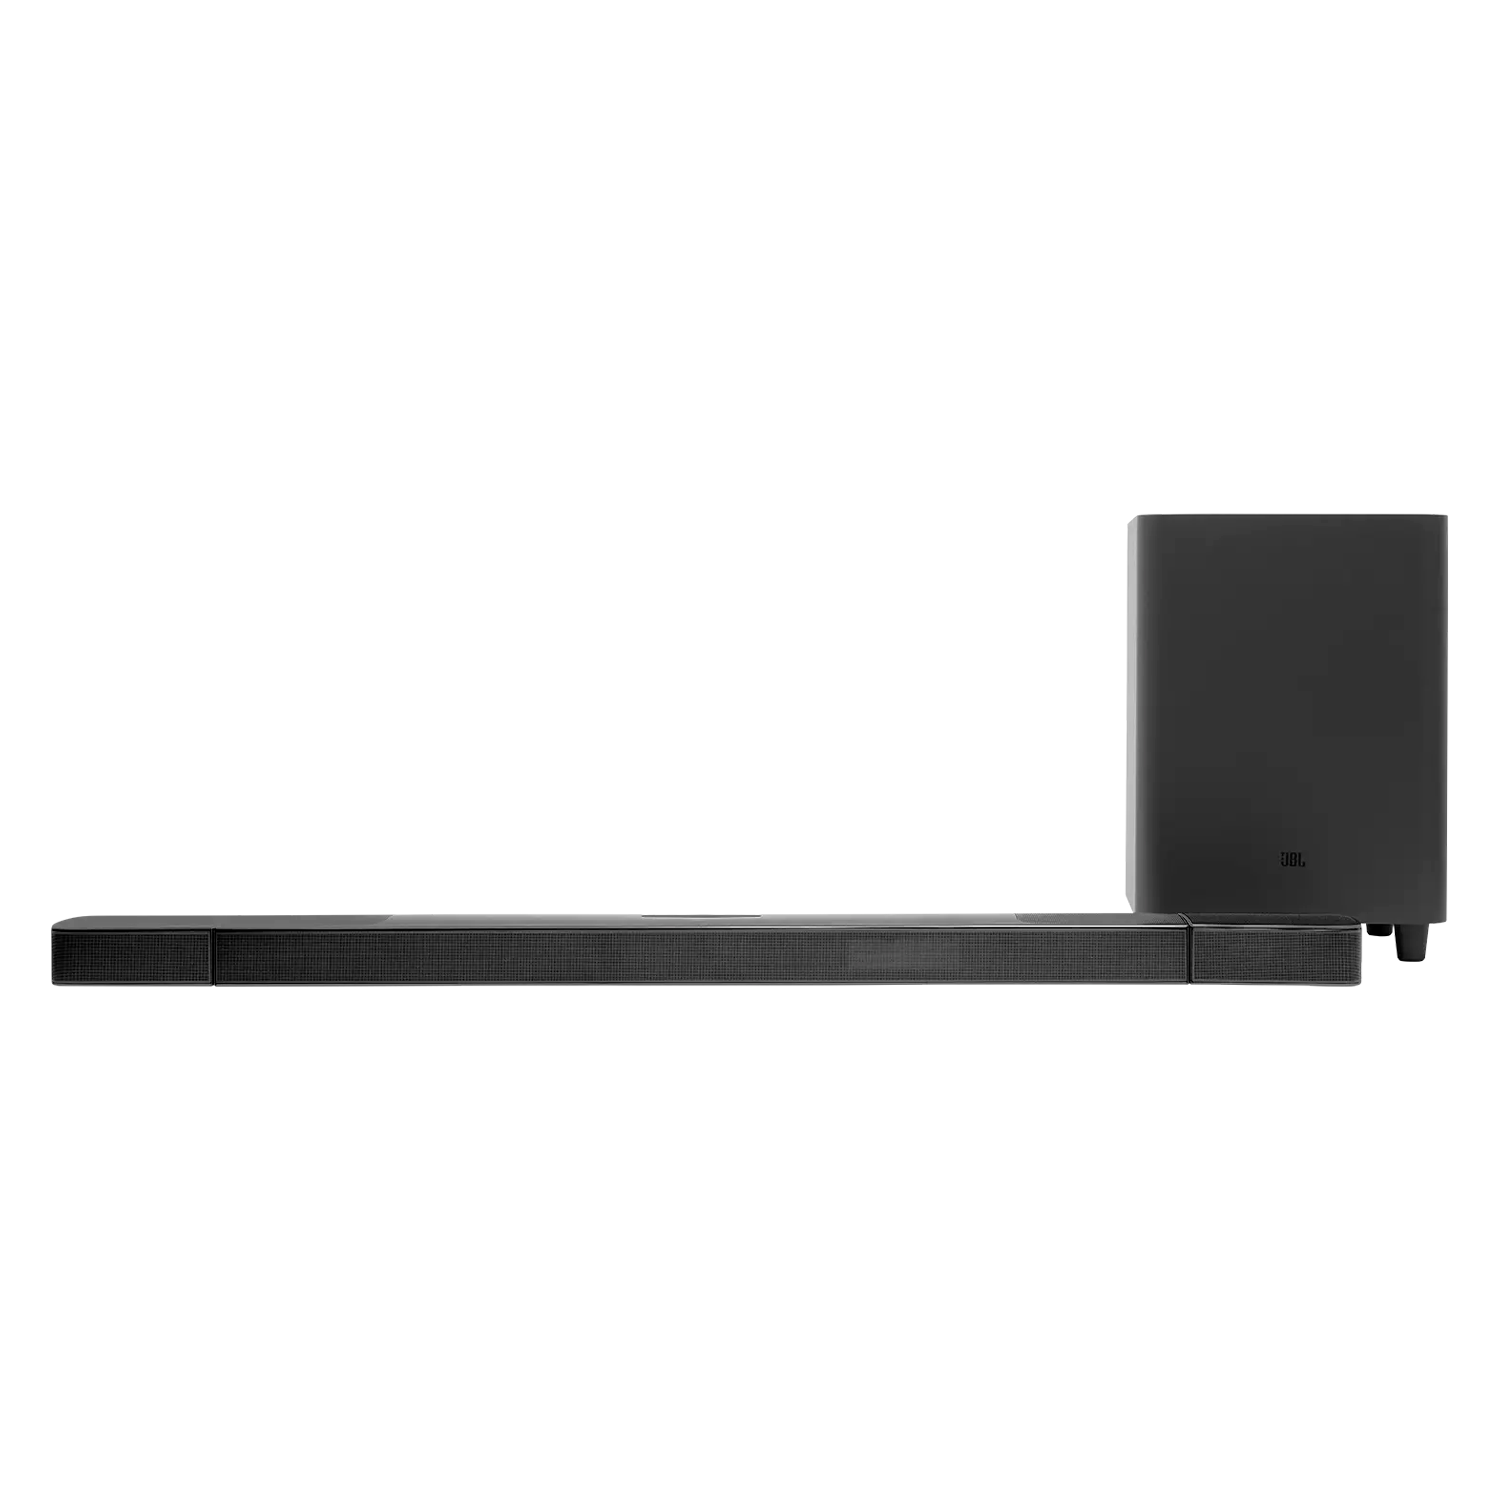 Caixa de Som JBL Soundbar 9.1 True Wireless Surround Bar-913 + Dolby Atmos